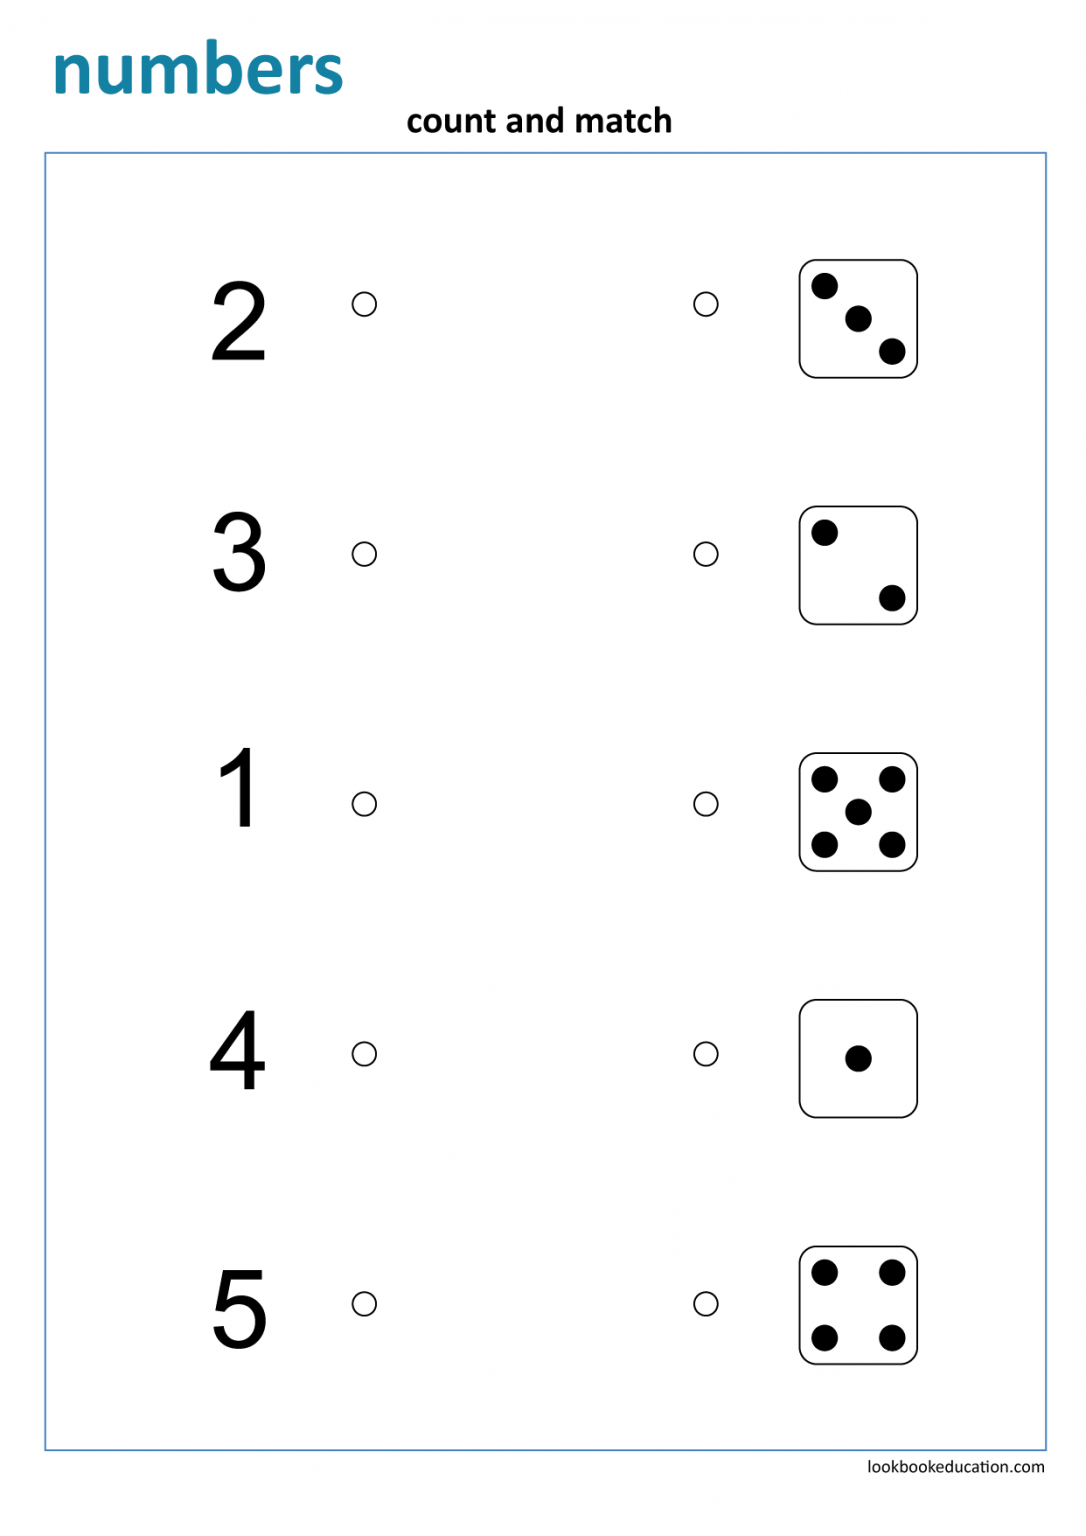 worksheet-matching-numbers-dice-lookbook-education